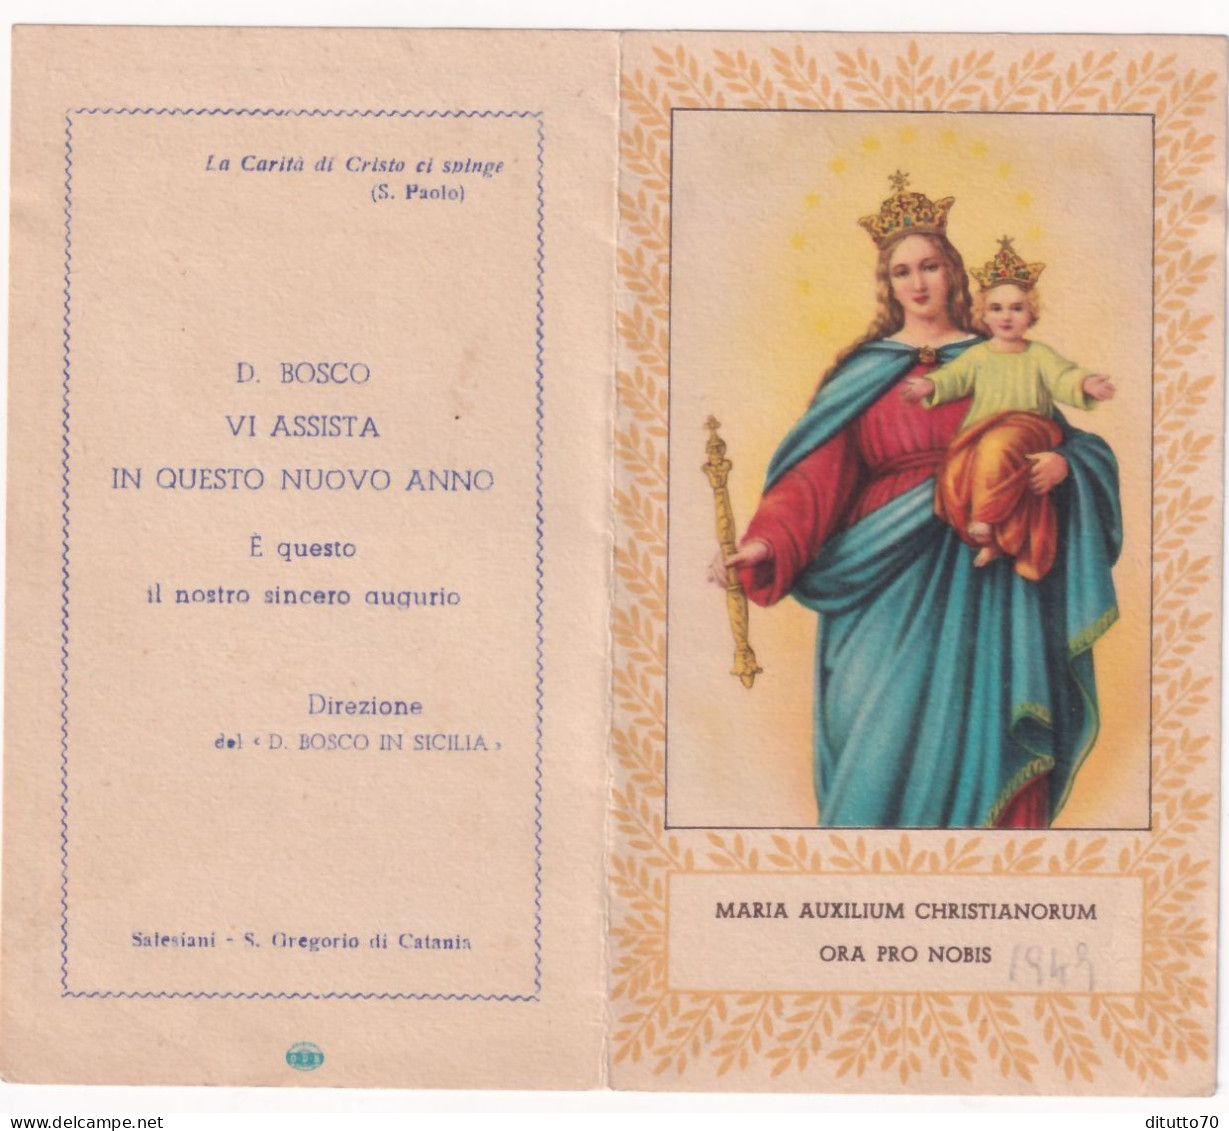 Calendarietto - Salesiano - Direzione Del D.bosco In Sicilia - Anno 1949 - Klein Formaat: 1941-60